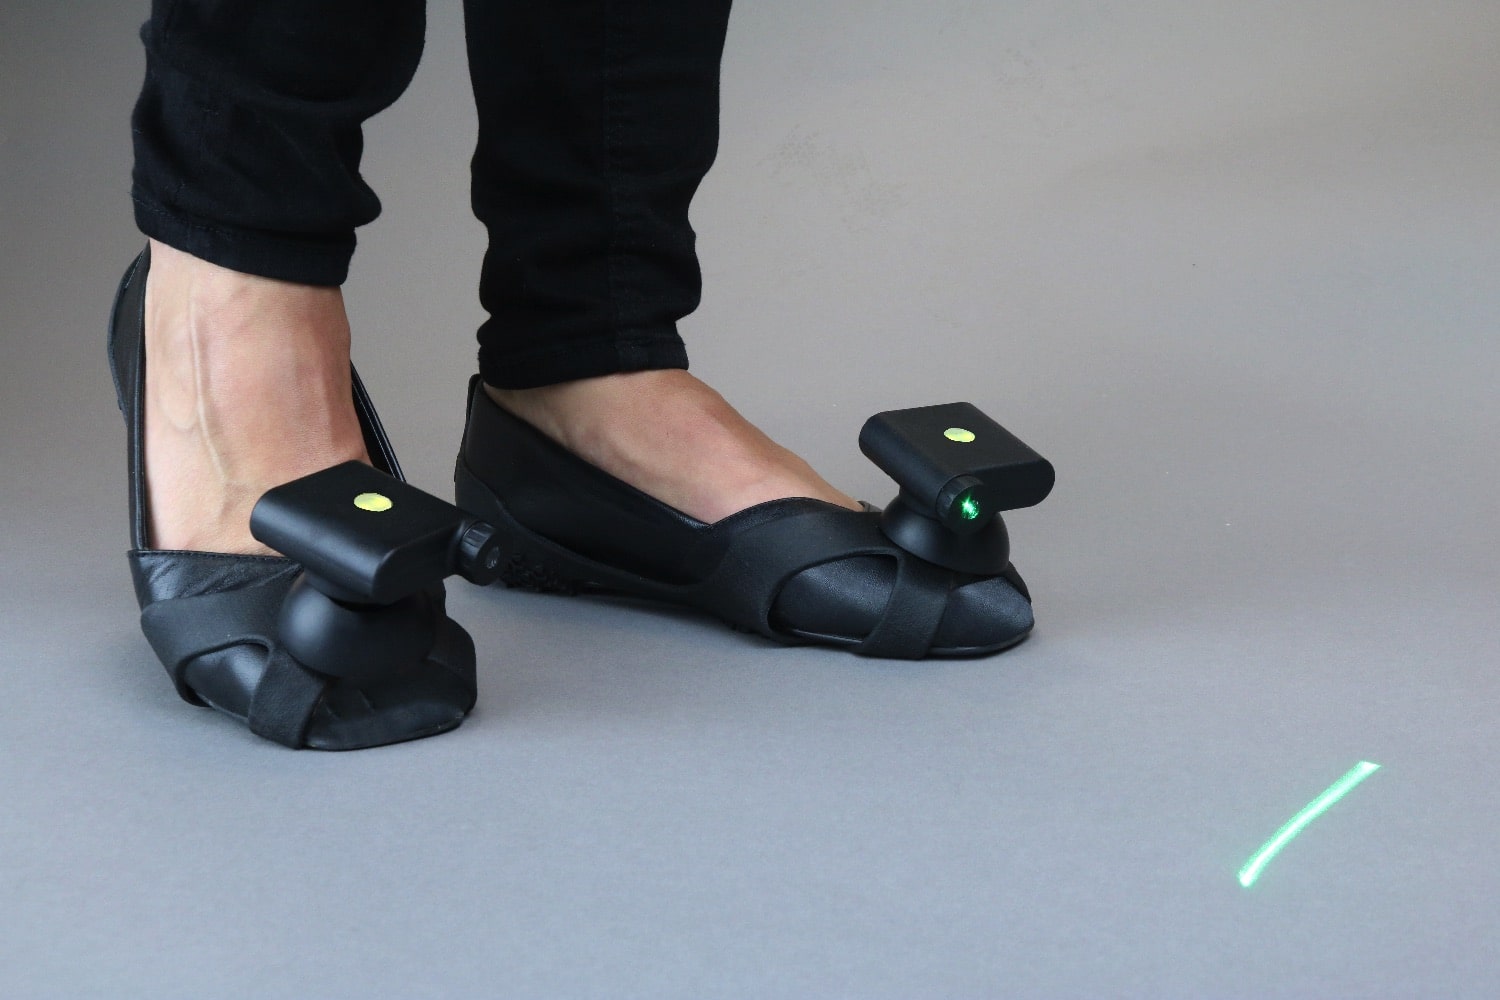 ¿Cómo pueden ayudar unos zapatos con rayos láser a tratar el Parkinson?